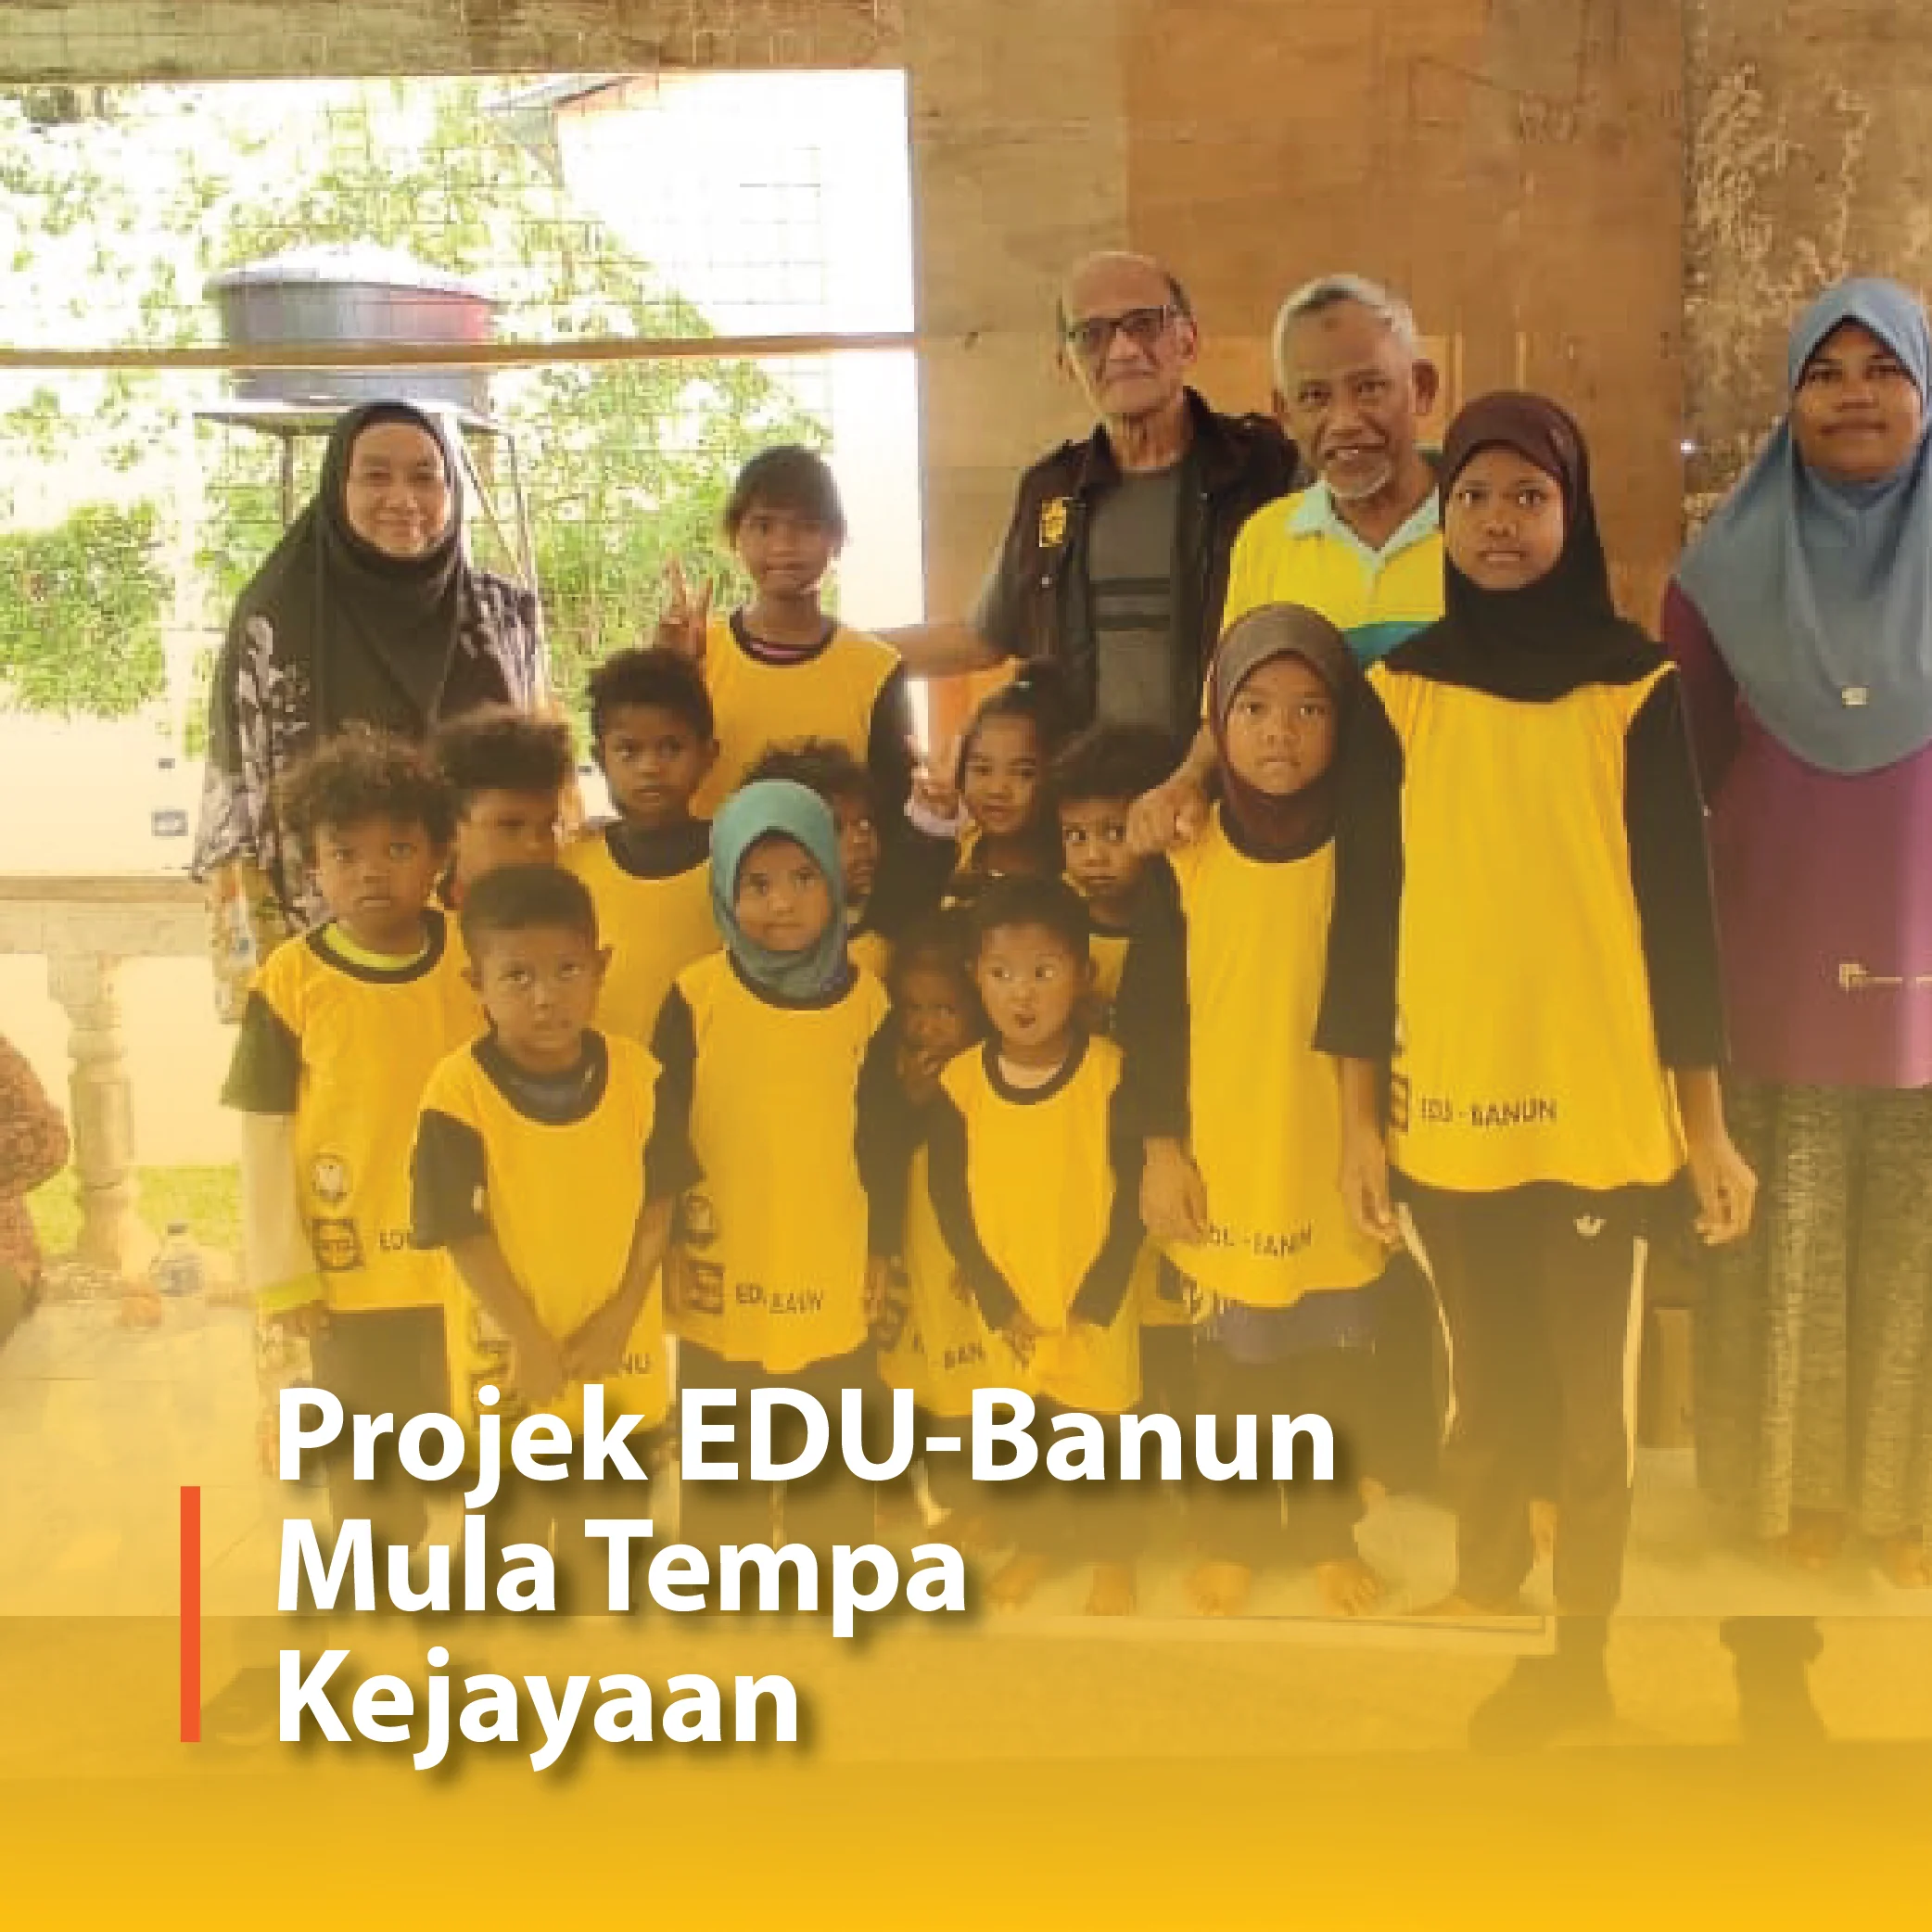 Projek EDU-Banun Mula Tempa Kejayaan